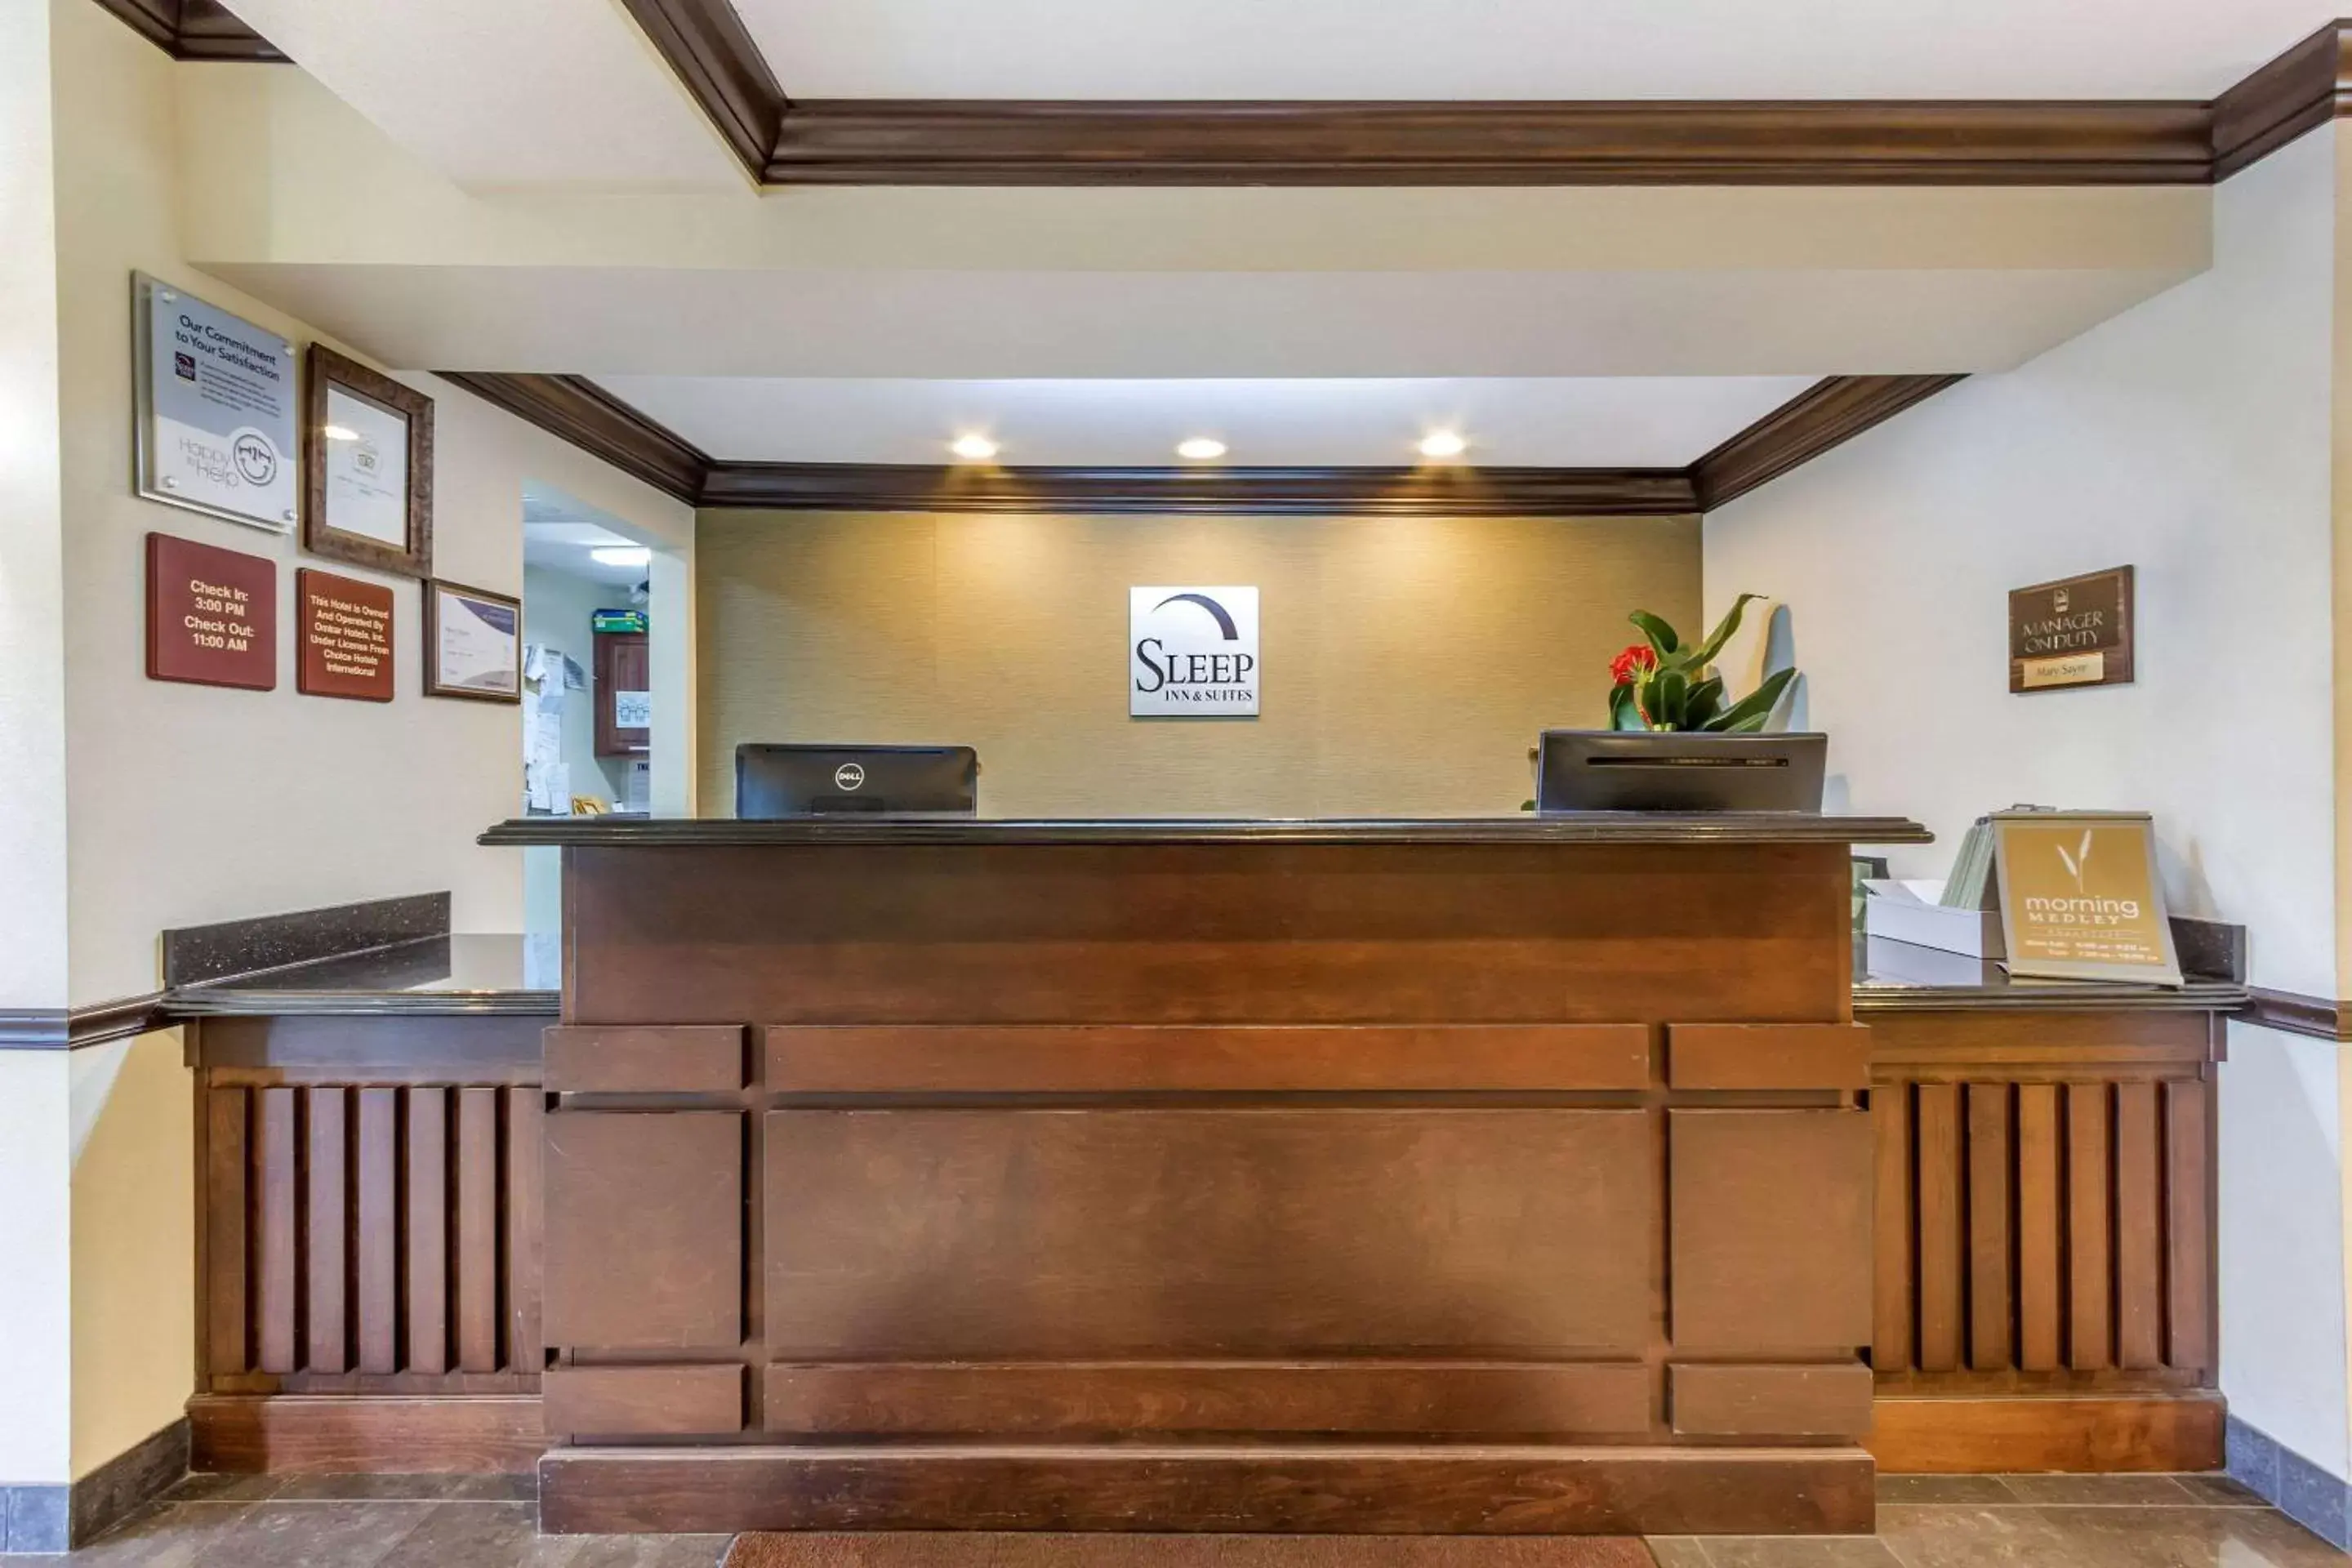 Lobby or reception, Lobby/Reception in Sleep Inn & Suites - Jacksonville